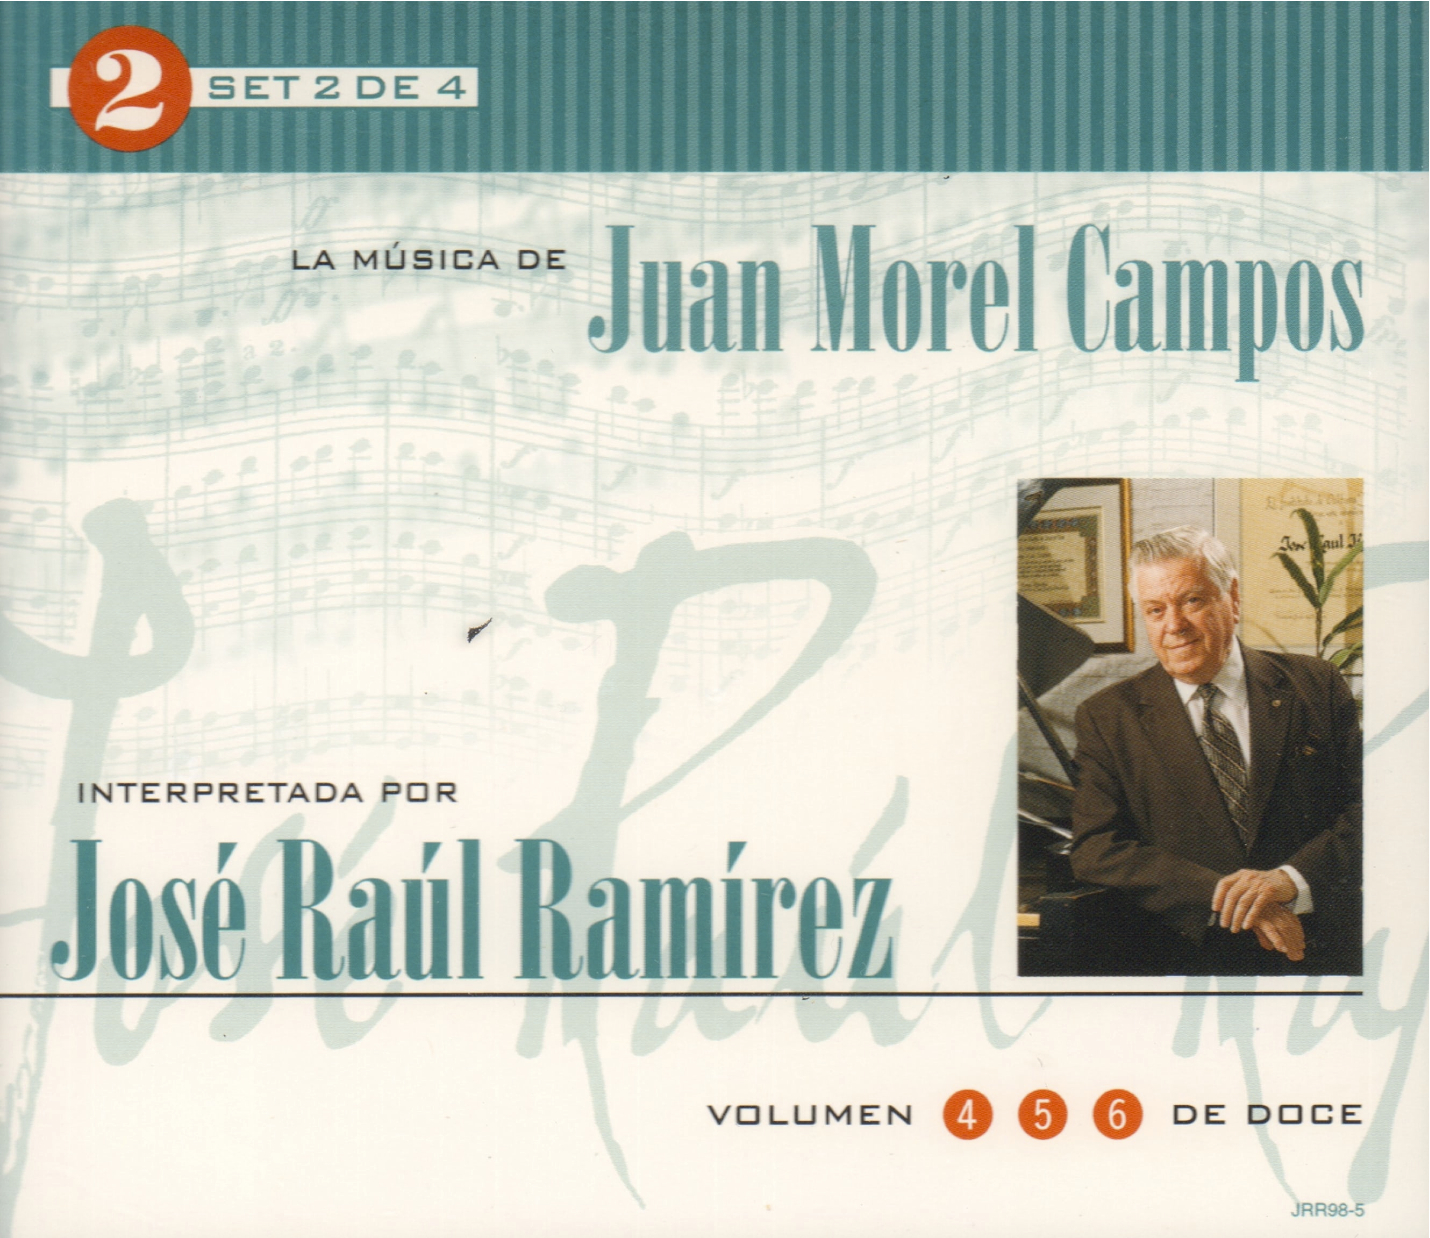 Set 2 de 4: La Música de Juan Morel Campos interpretada por José Raúl Ramírez